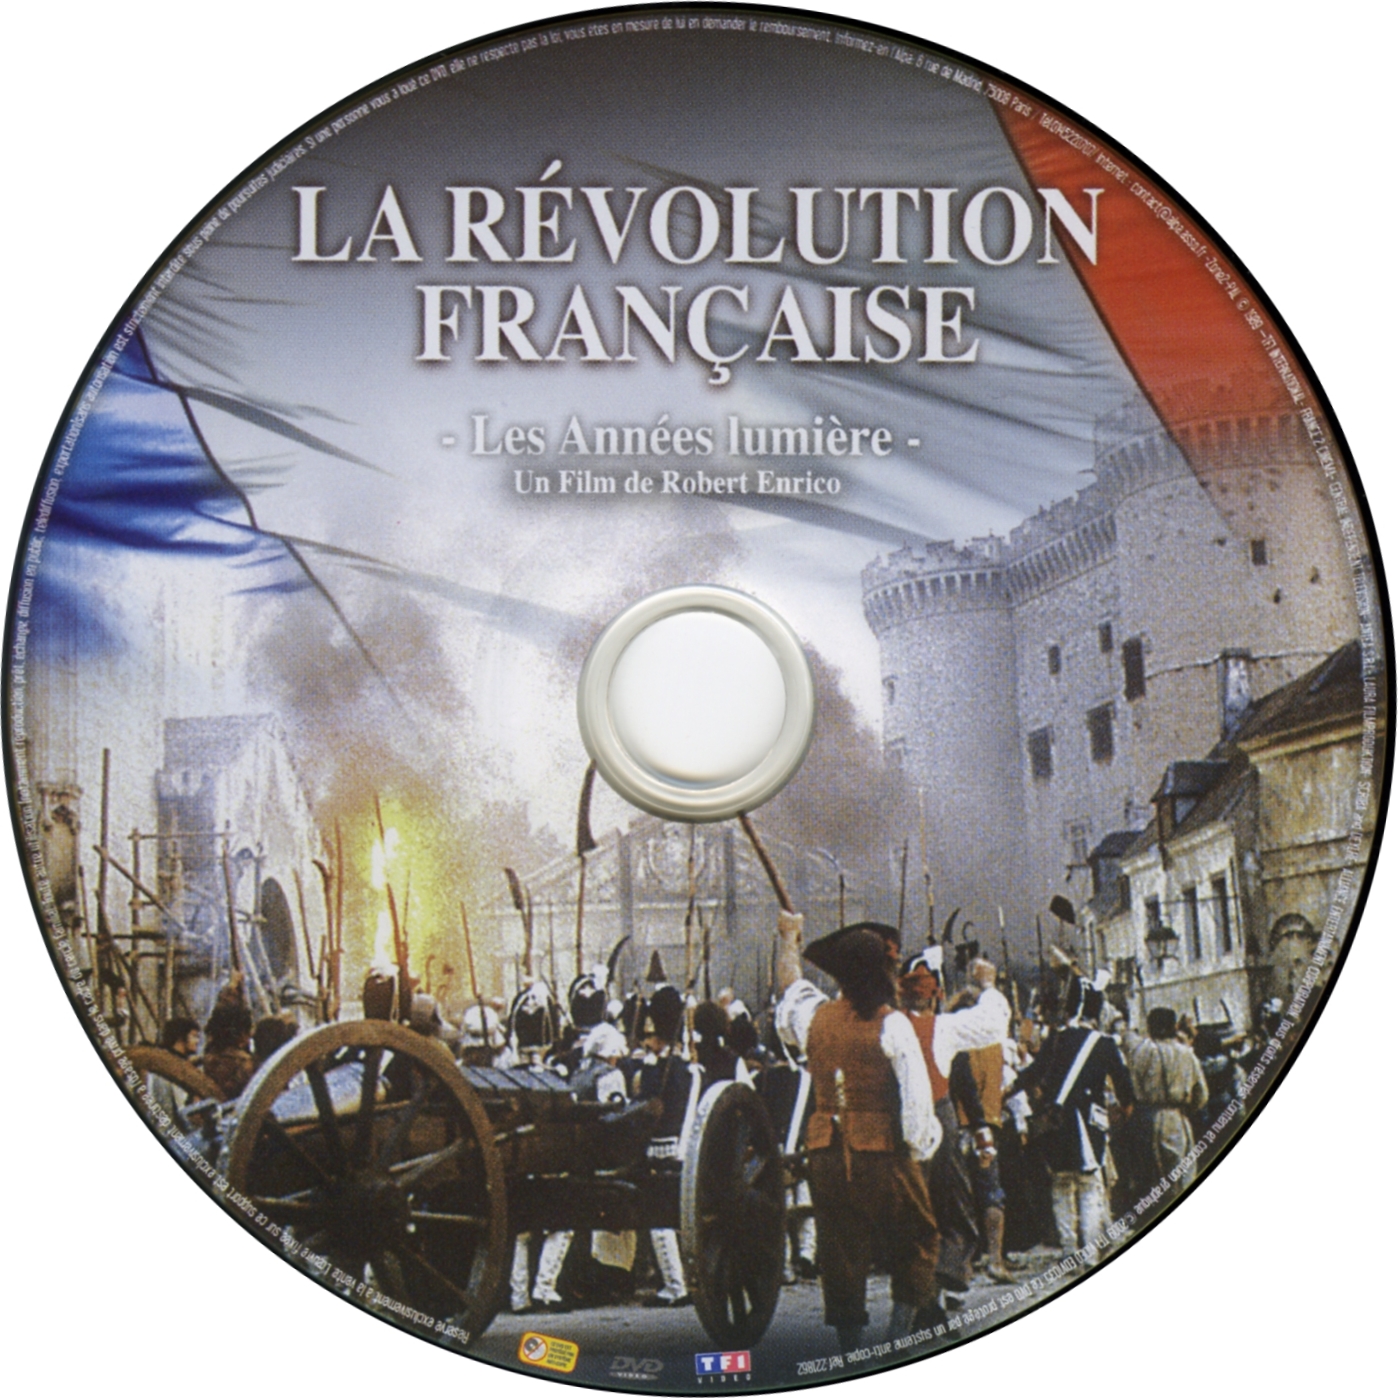 La rvolution Francaise DVD 1